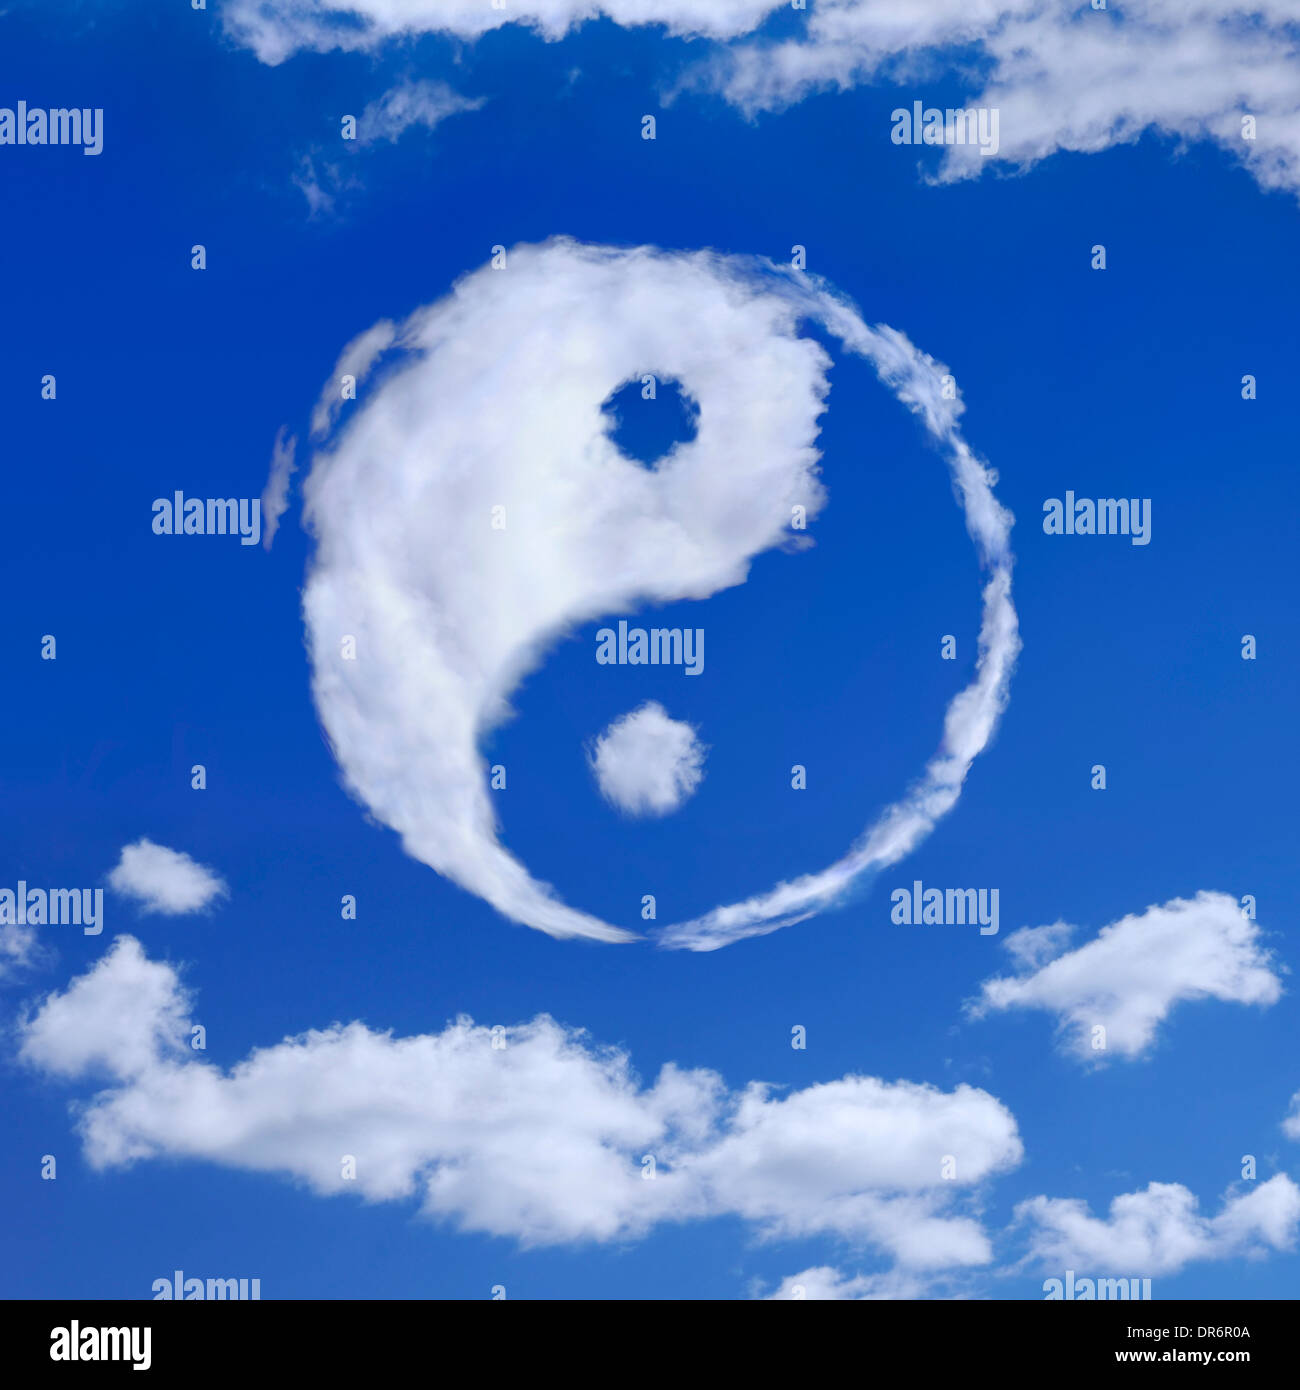 Símbolo Yin-Yang espiritual hecha de nubes blancas en el cielo azul. La meditación, la espiritualidad concepto. Foto de stock